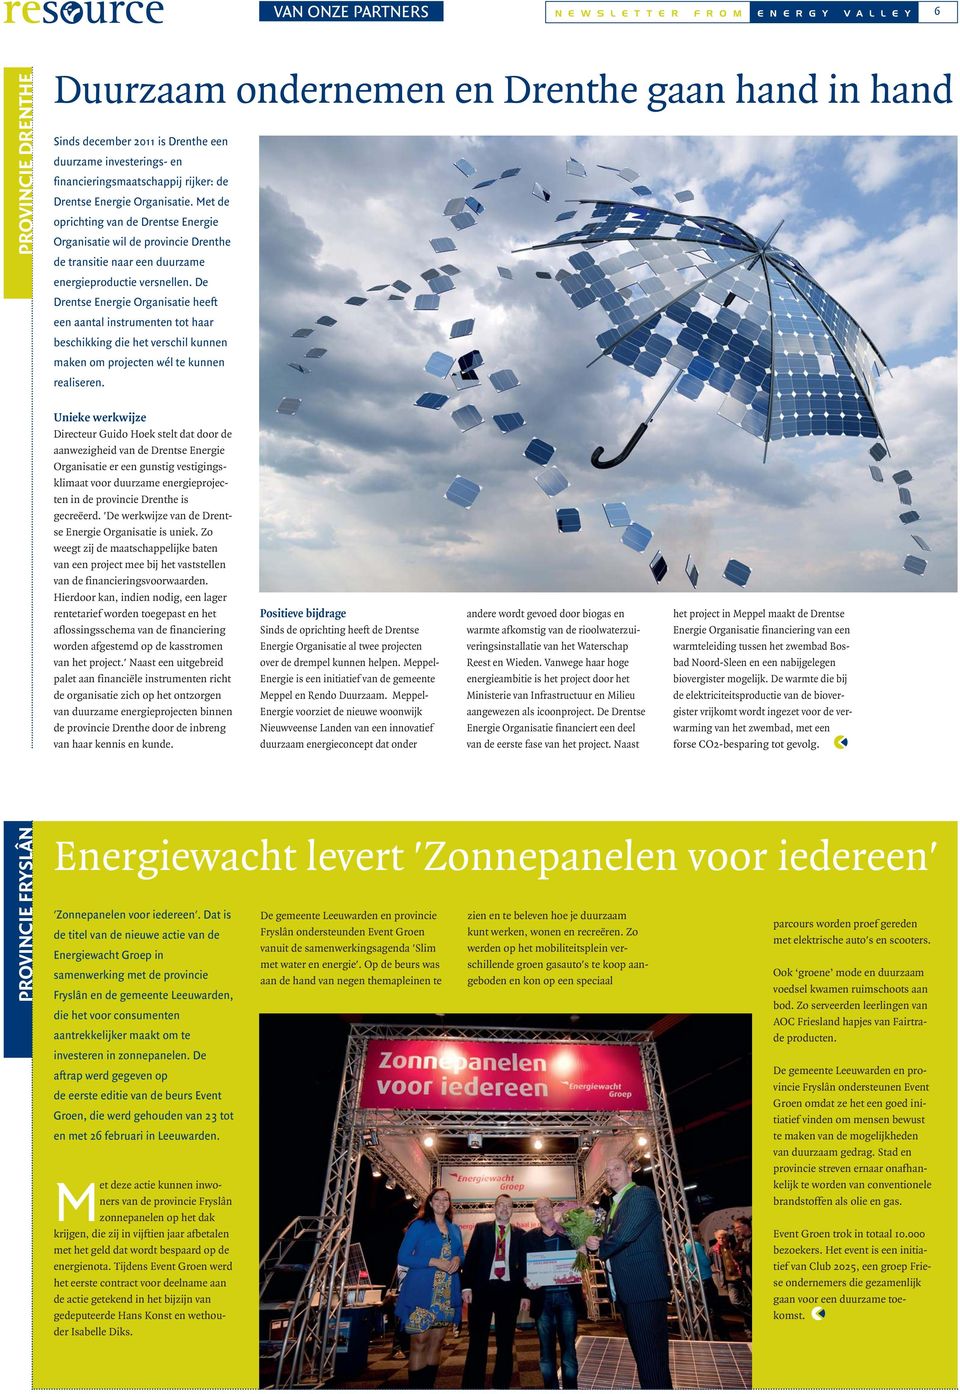 Met de oprichting van de Drentse Energie Organisatie wil de provincie Drenthe de transitie naar een duurzame energieproductie versnellen.